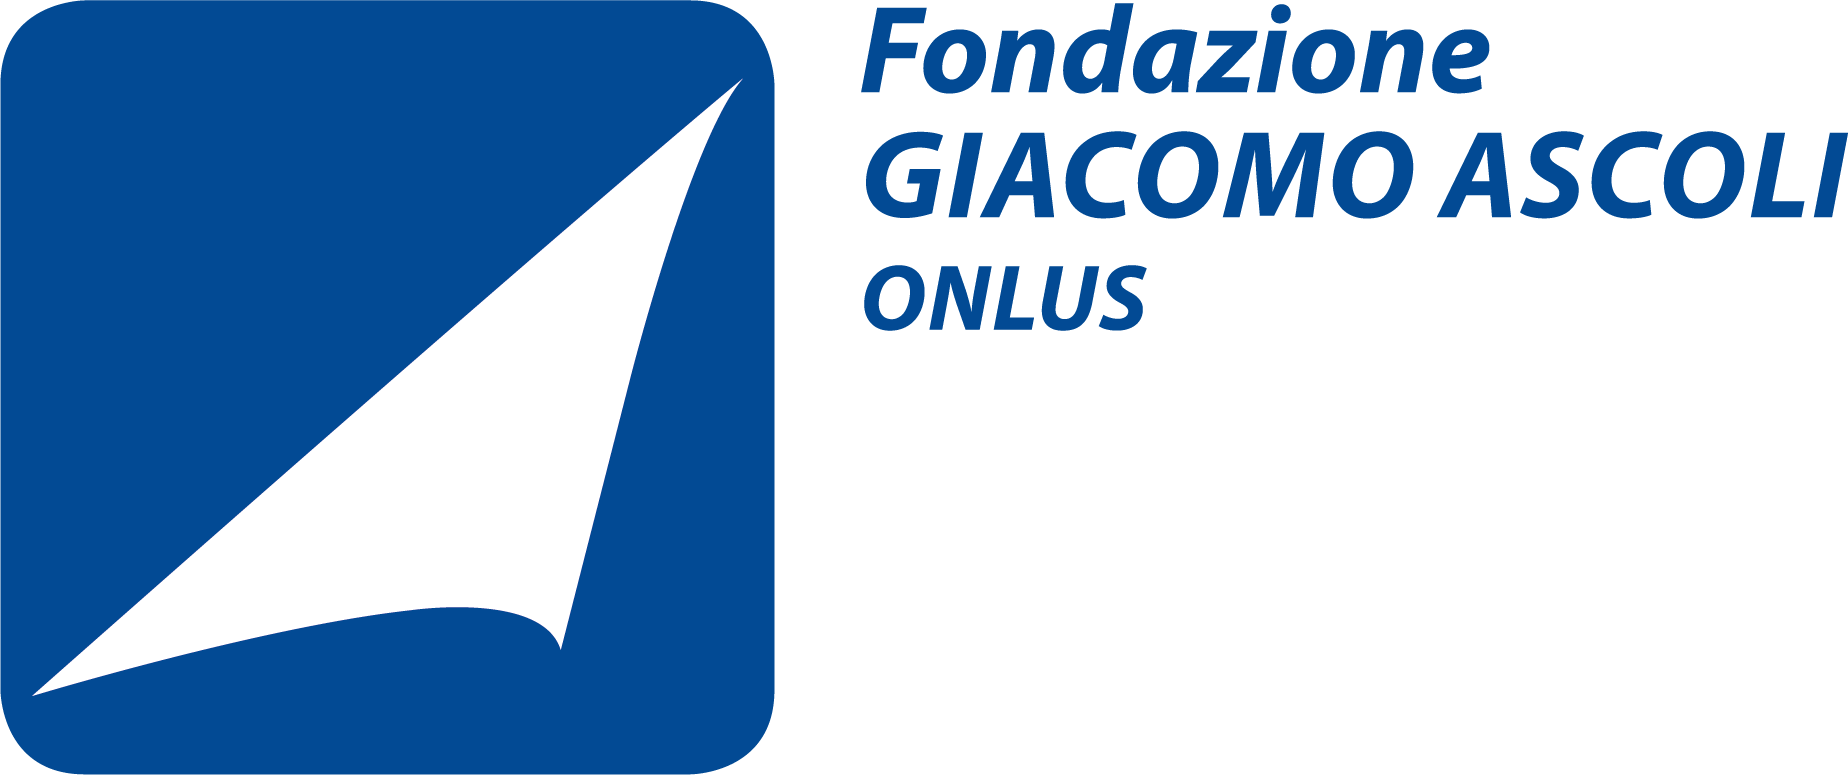 Fondazione Giacomo Ascoli